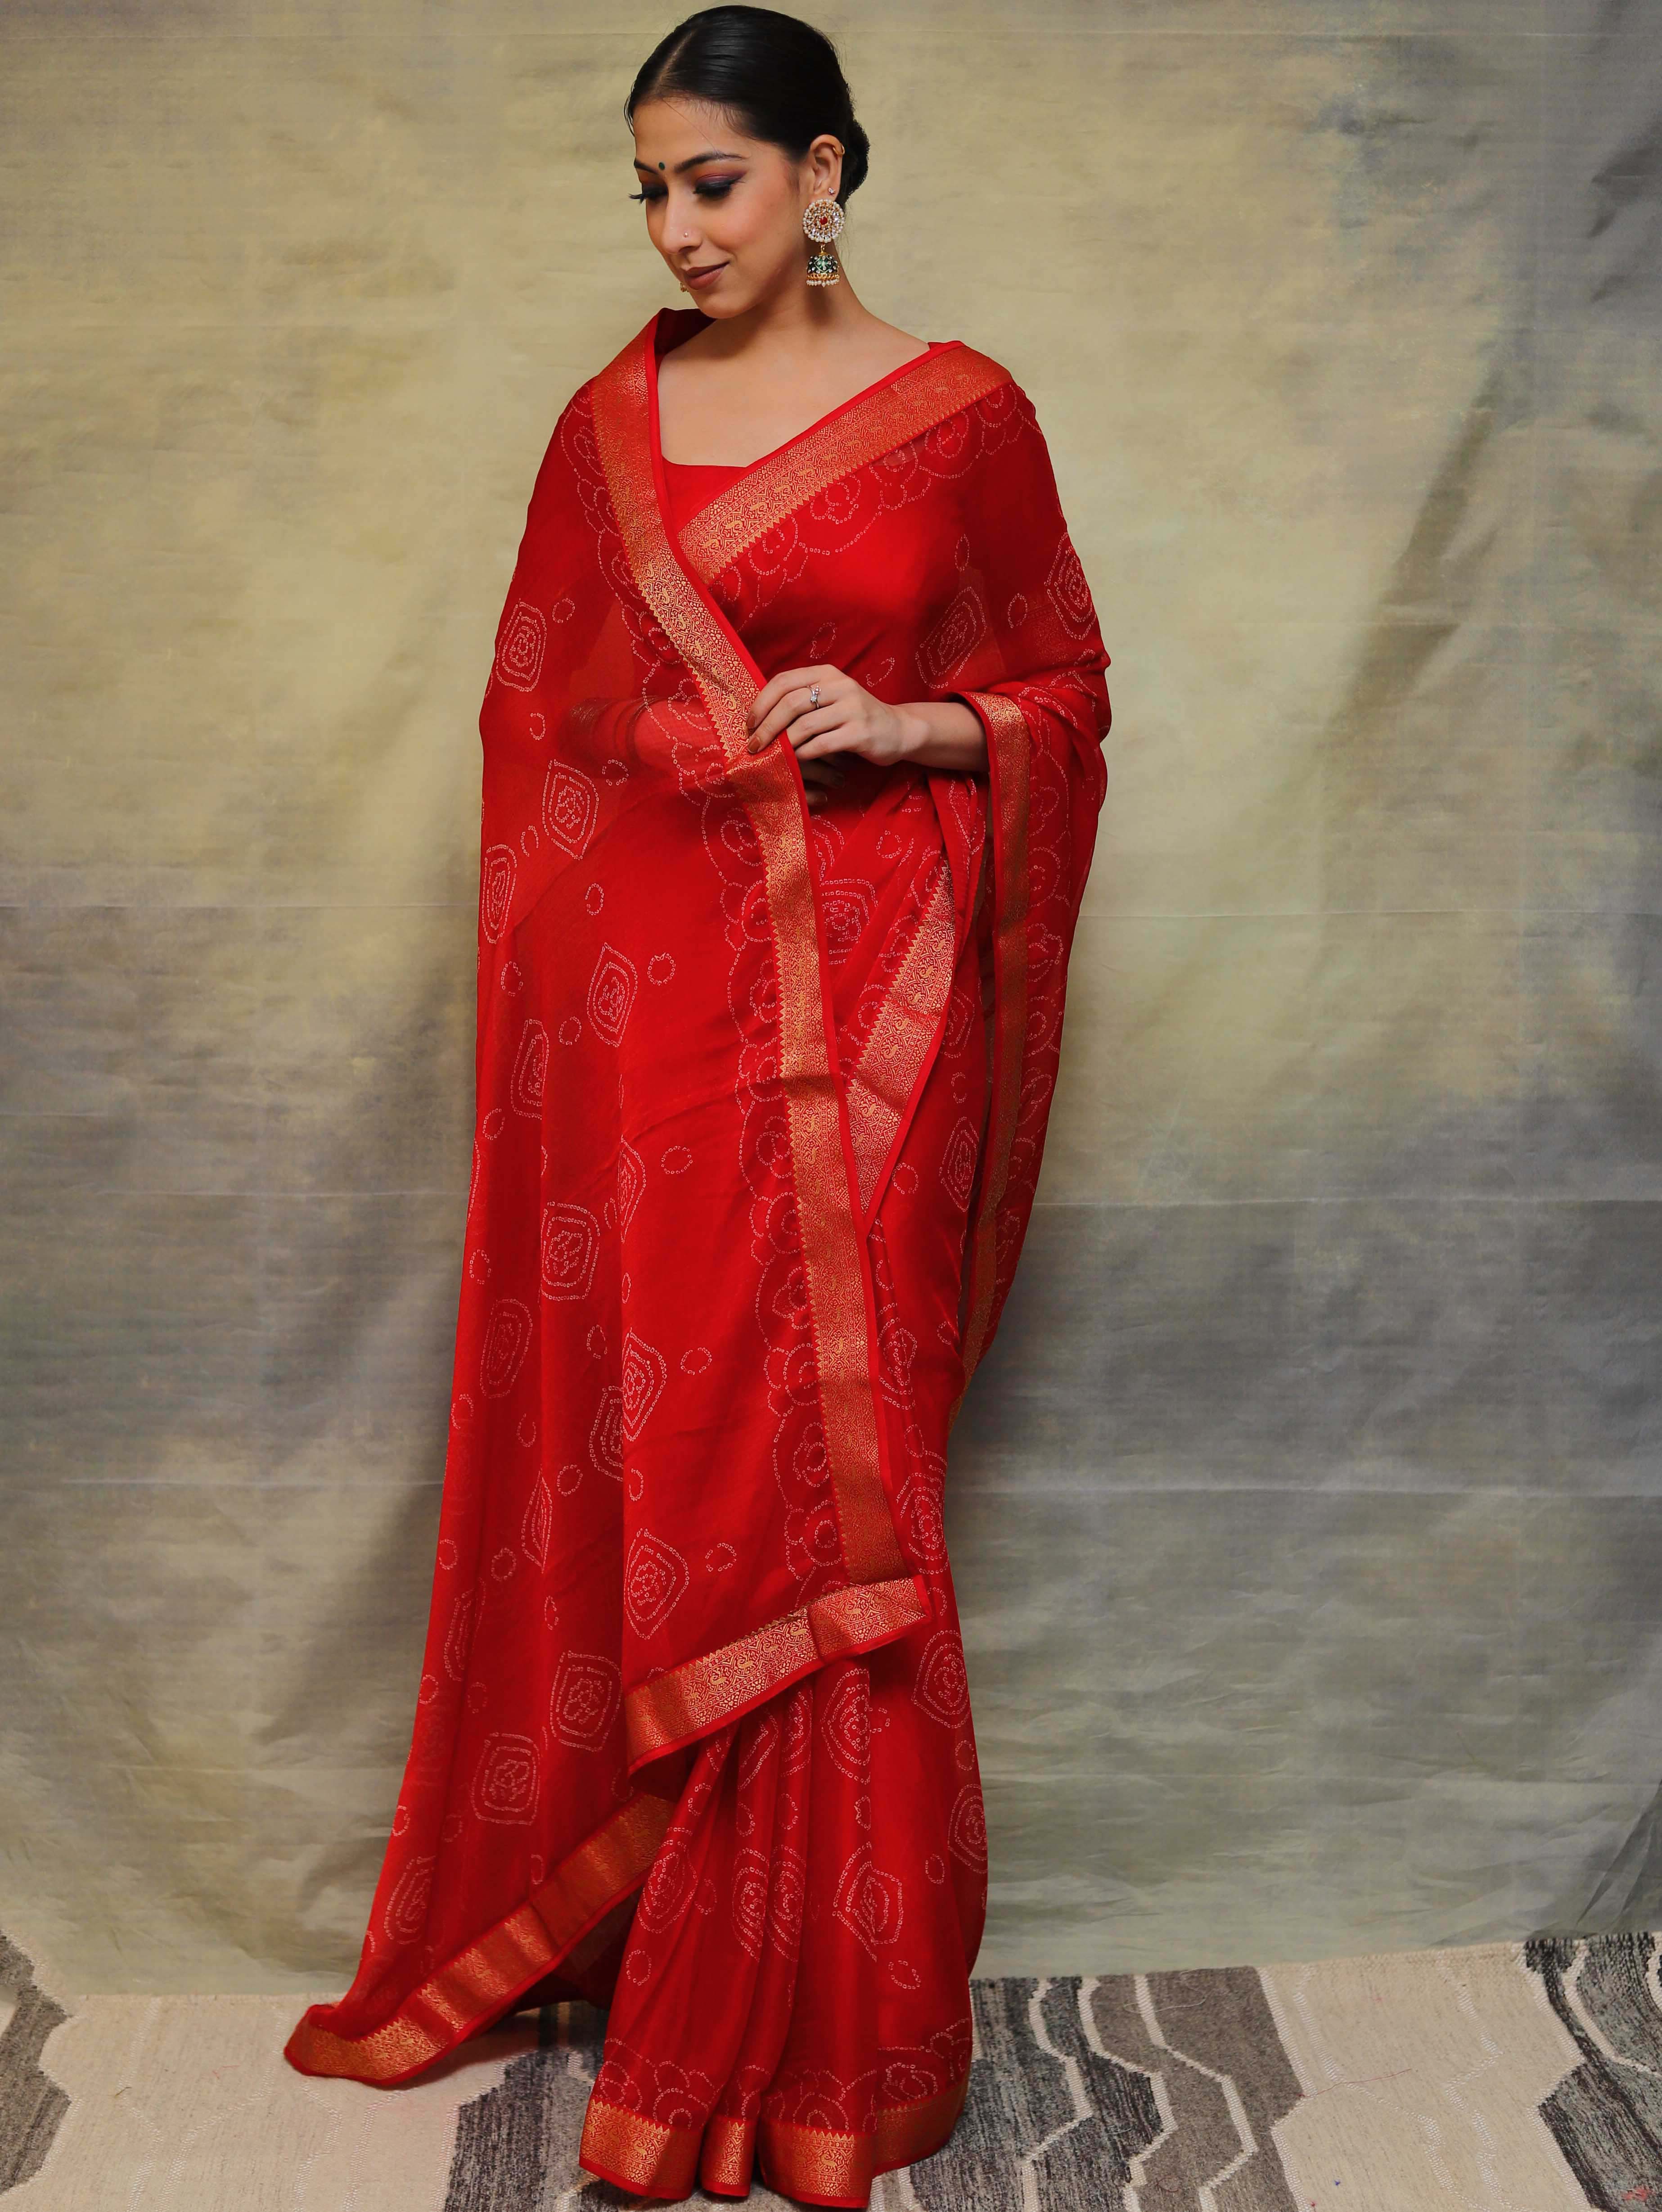 Banarasee Chiffon Blend Saree Chunri Print Zari Border & Silk Blouse-Red